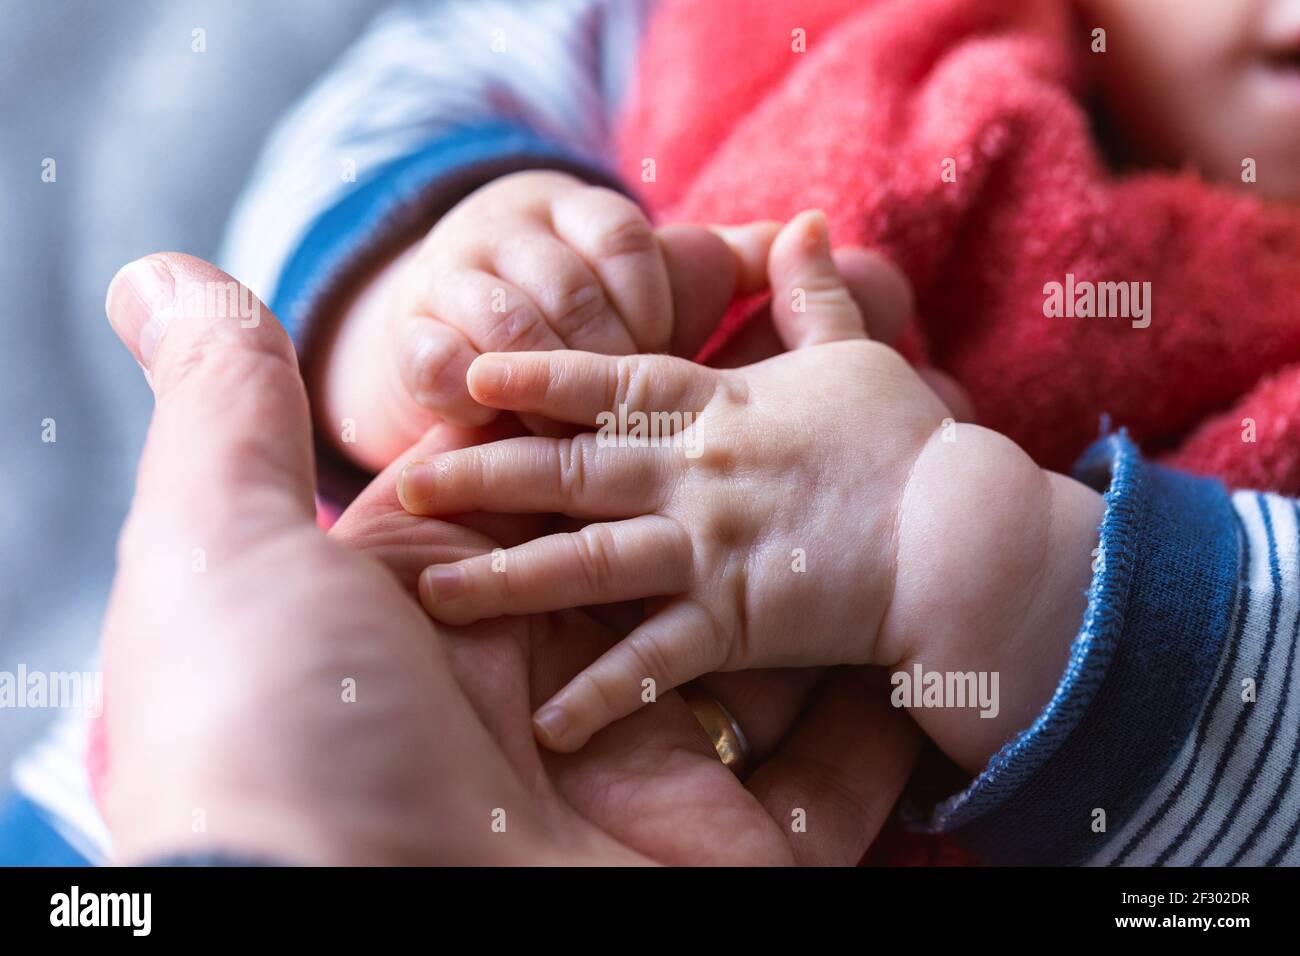 Ein Nahaufnahme Porträt von kleinen Baby Hände halten die Hand des Vaters. Die Finger einer Hand greifen den Finger des Elternteils und die andere ist resti Stockfoto